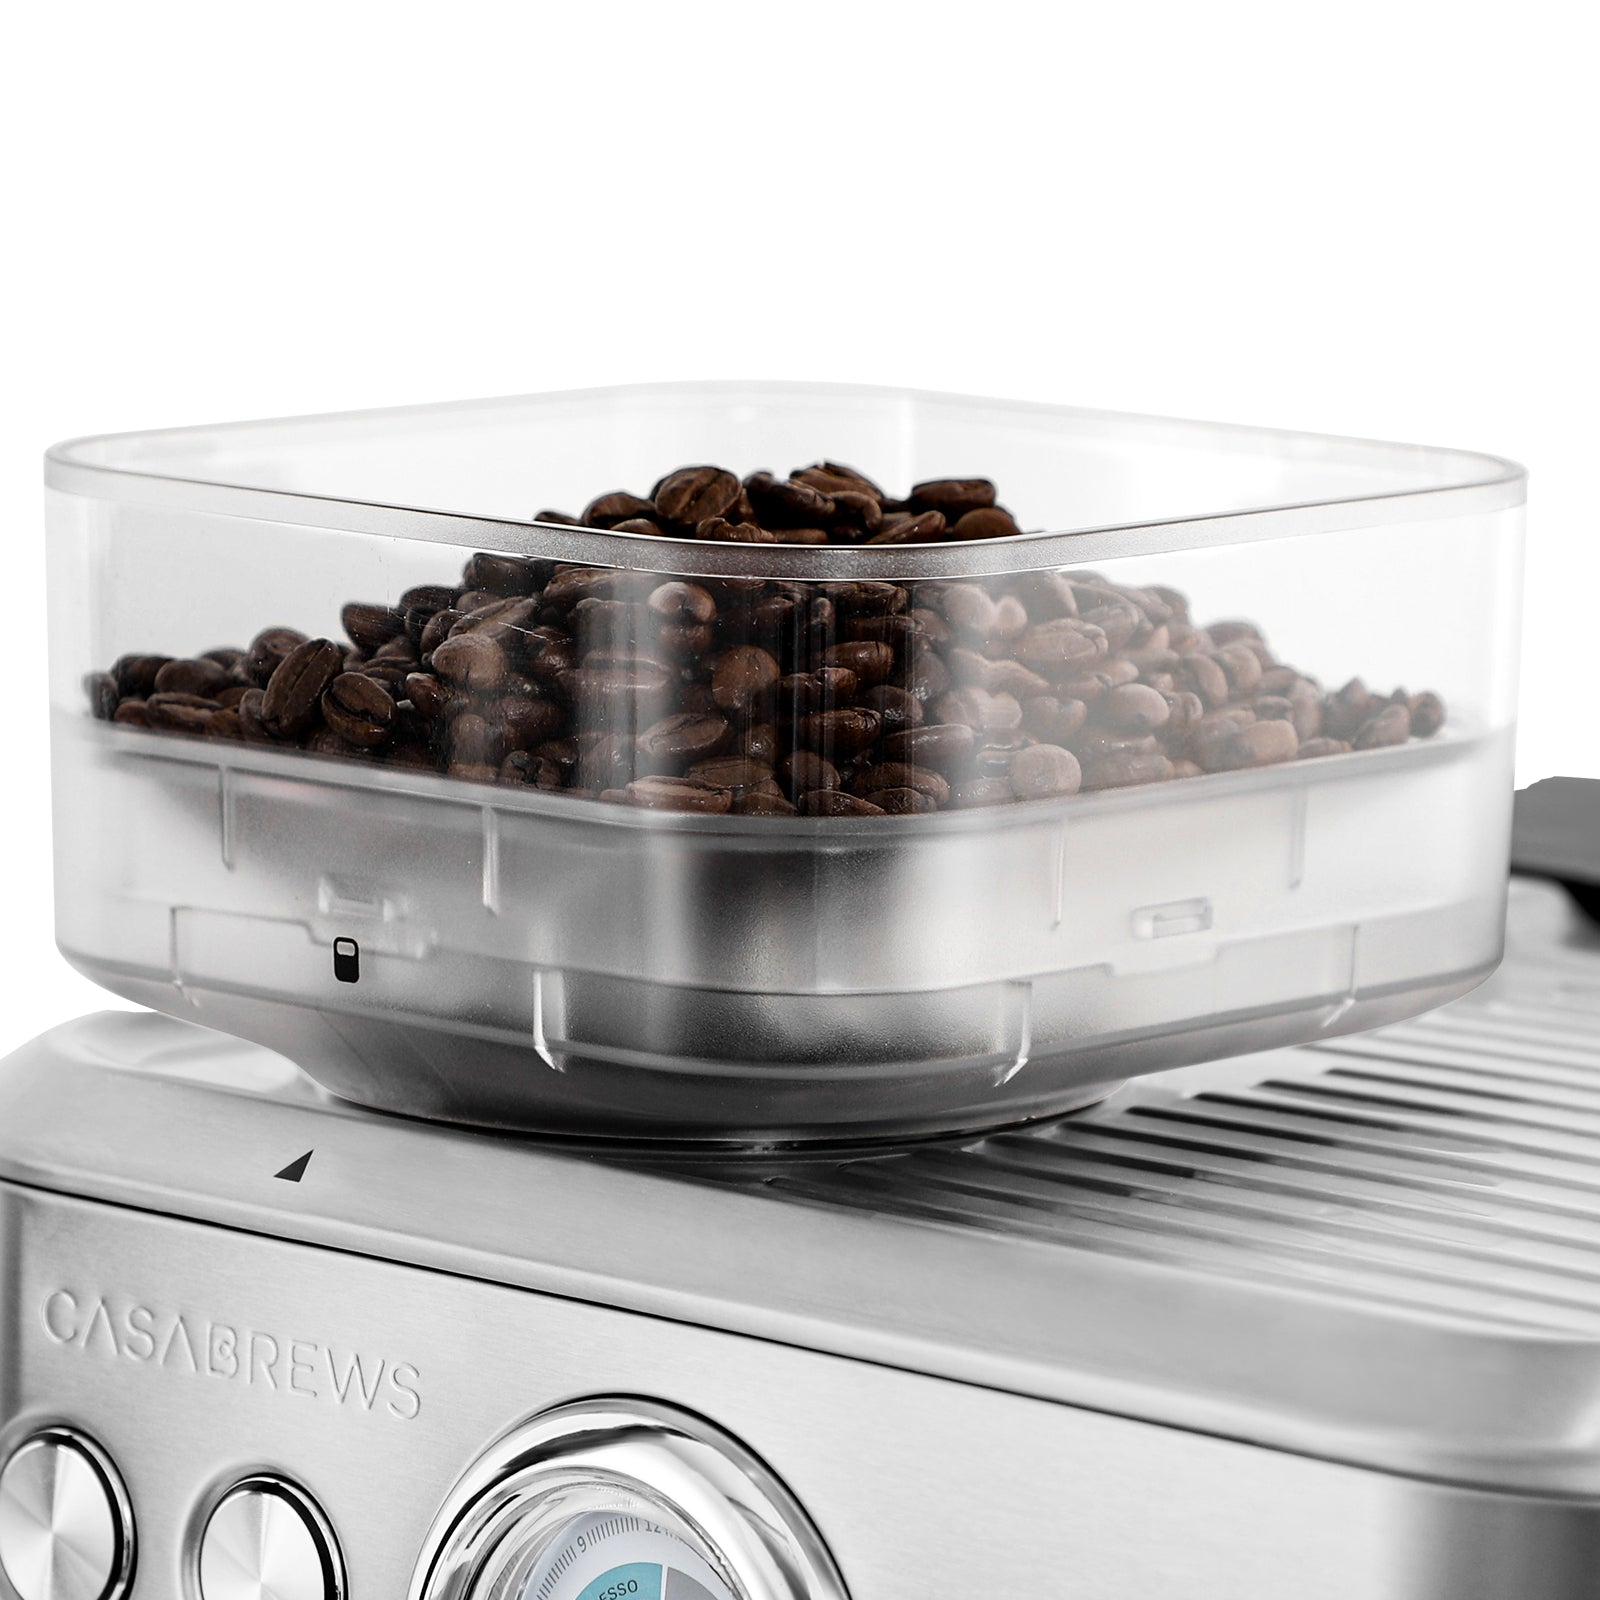 Casabrews Espresso Machine 5700 Series Bean Storage